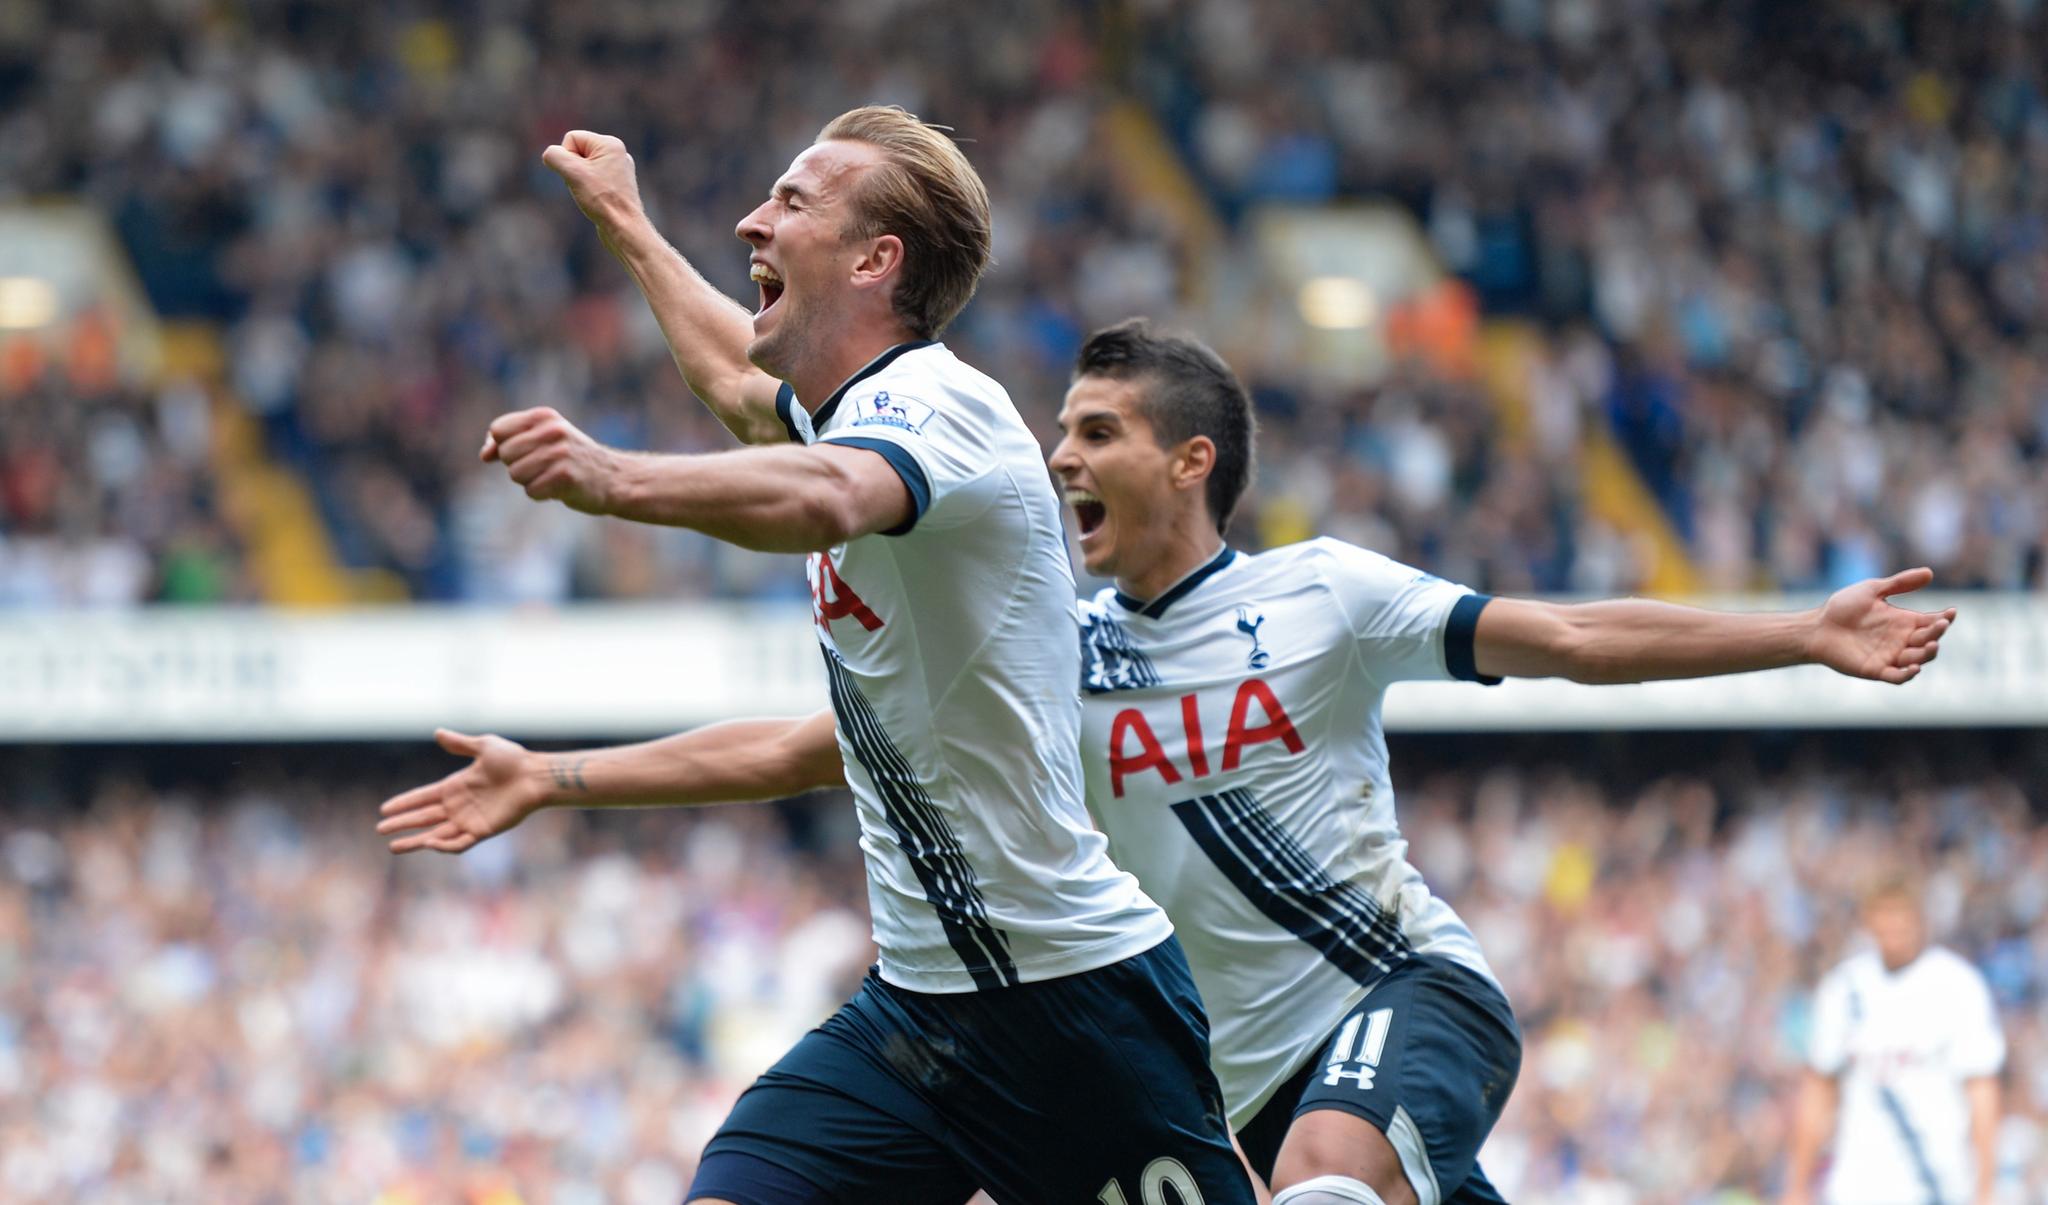 ENDELIG: Harry Kane har satt inn 3-1 for Tottenham. Erik Lamela (bak) fikk også sin forløsende scoring senere i kampen.